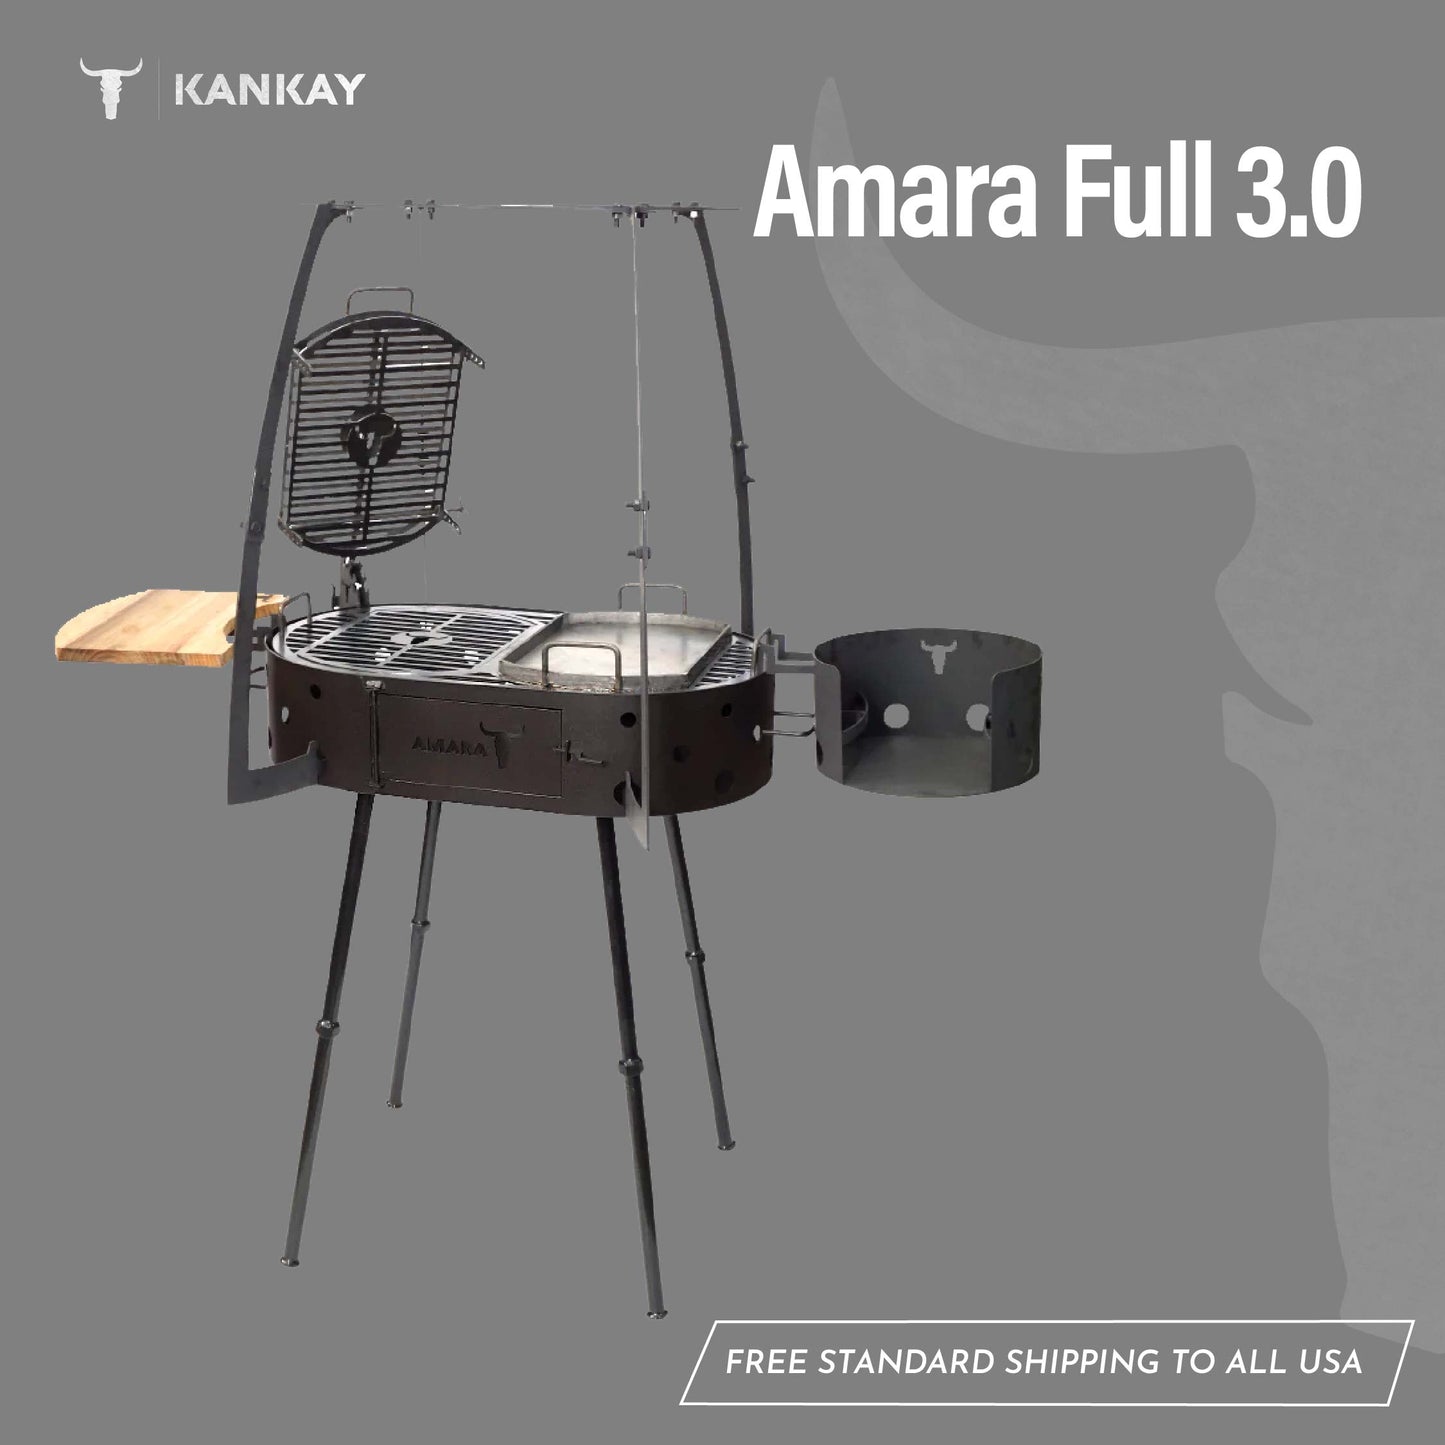 Amara Full 3.0